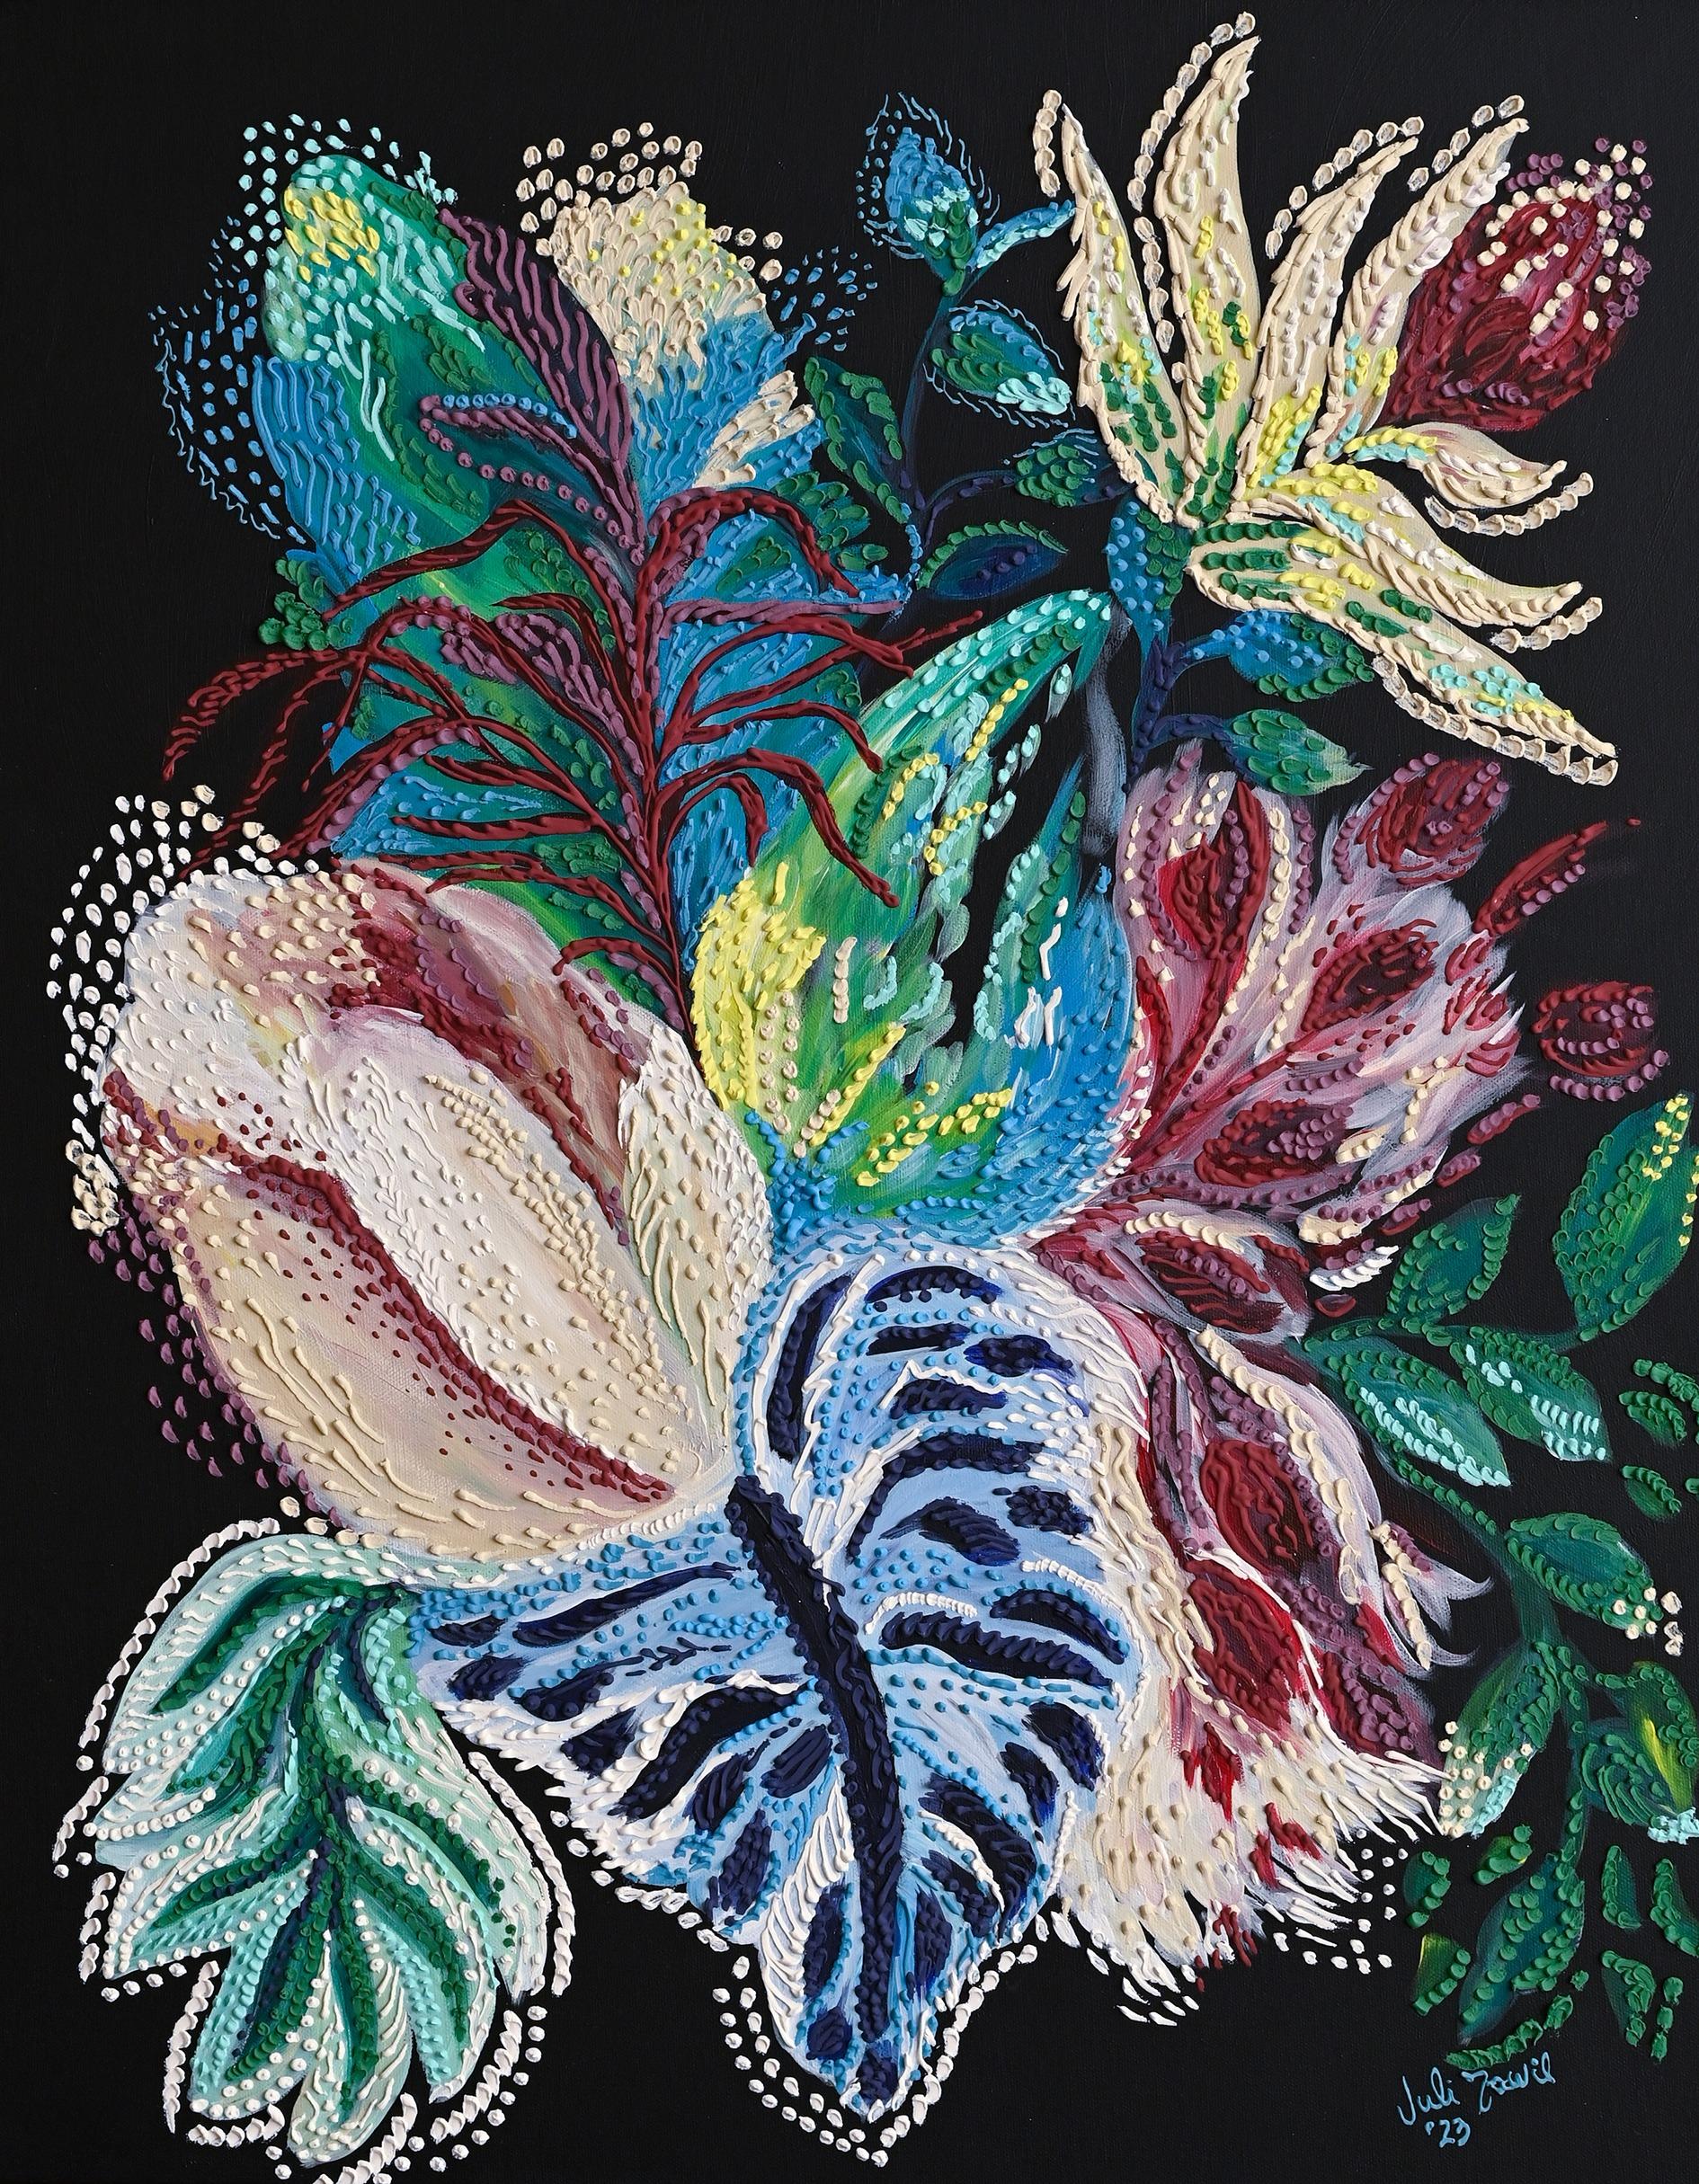 Blumenstrauß von Julieta Tawil – Painting von Unknown